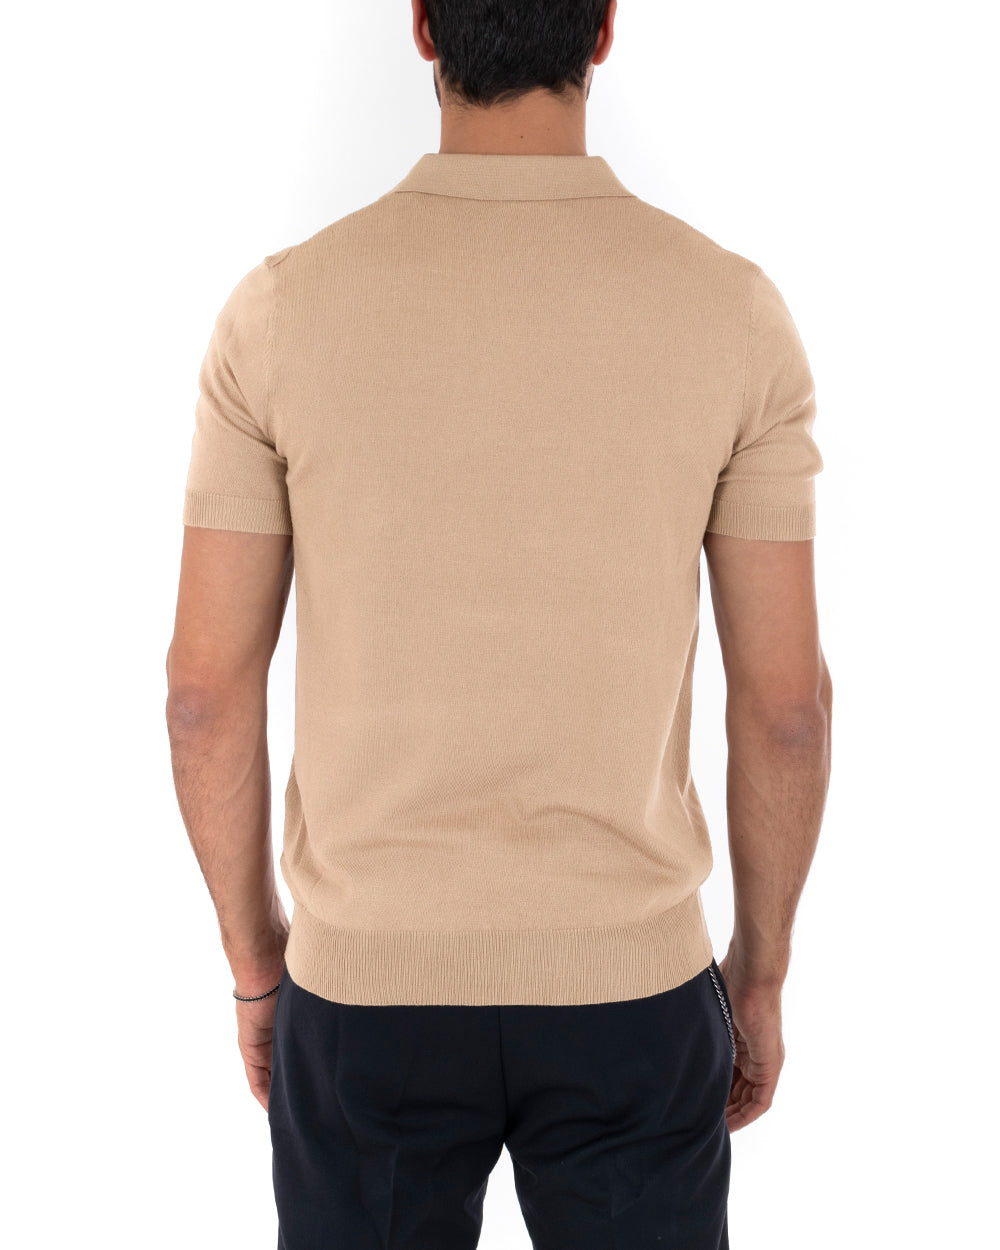 Polo Filo Uomo T-Shirt Manica Corta Con Colletto Bottoni Tinta Unita Beige Casual GIOSAL-TS2791A